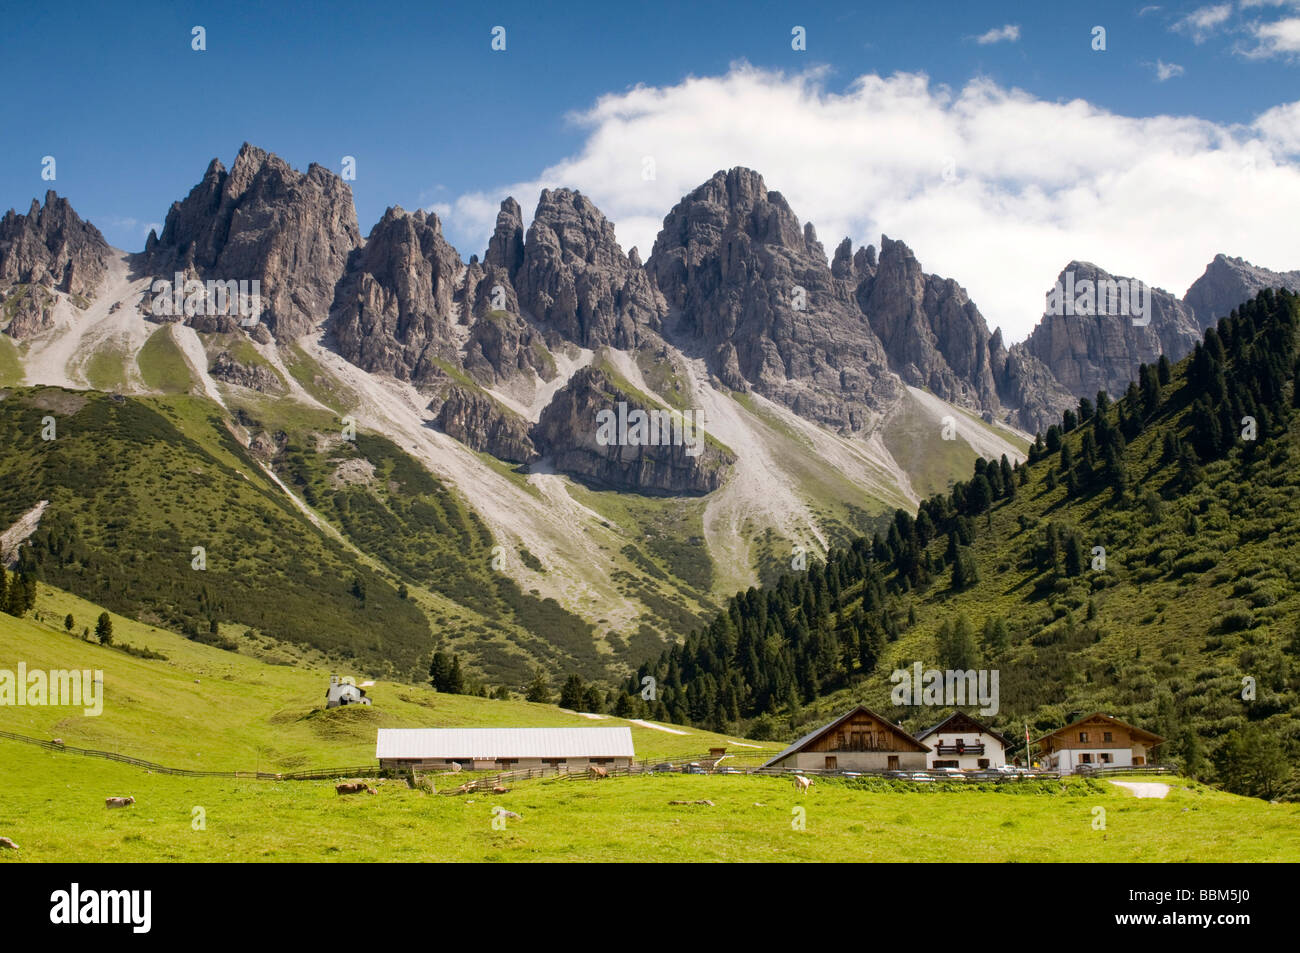 Kematen alp, Mount Kalkkoegel at back, Axams, Tyrol, Austria, Europe Stock Photo